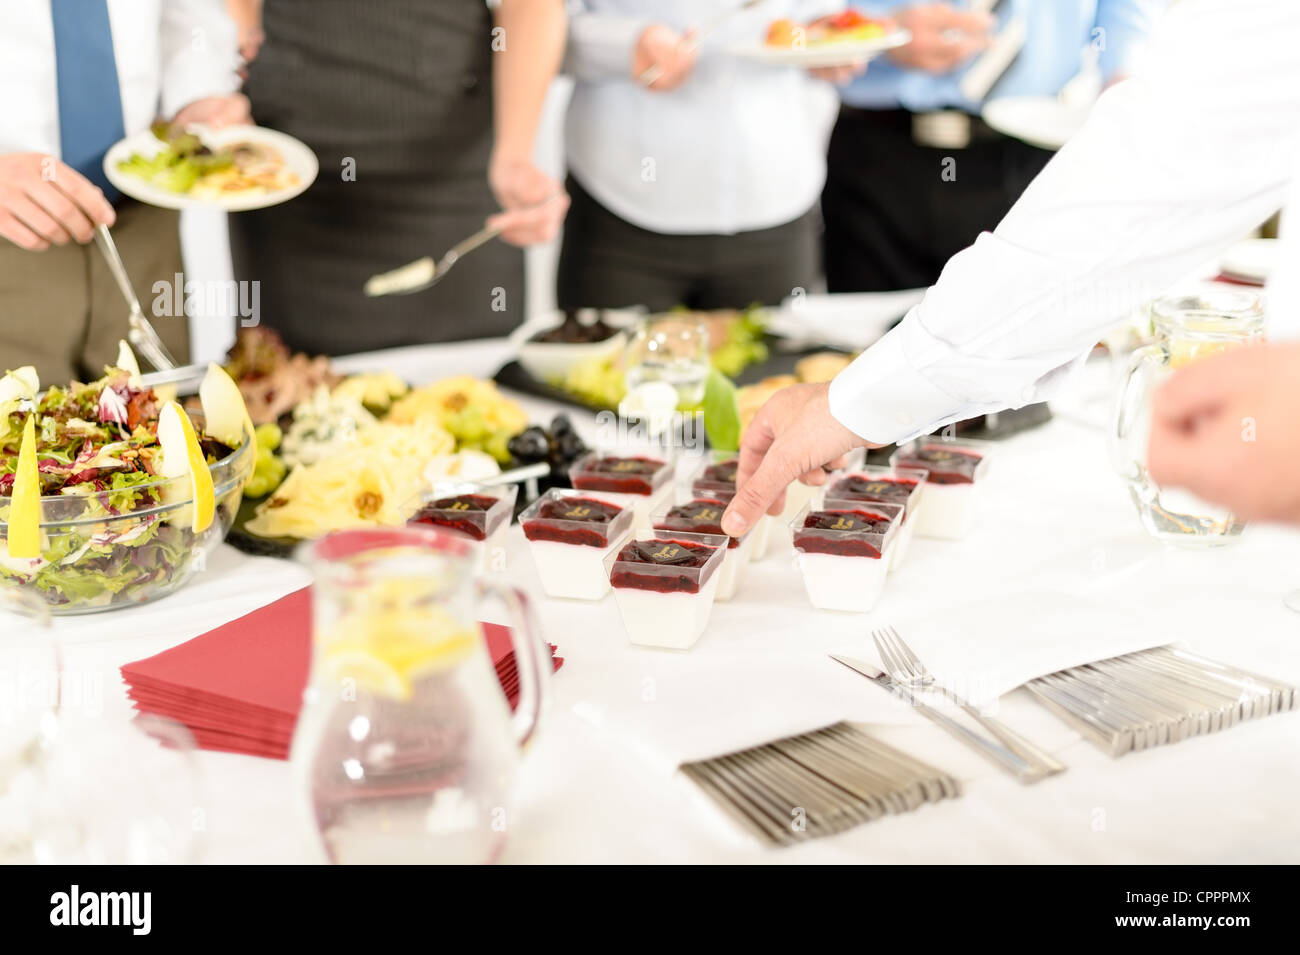 Apéritifs mini desserts sur nappe blanche buffet traiteur business event Banque D'Images